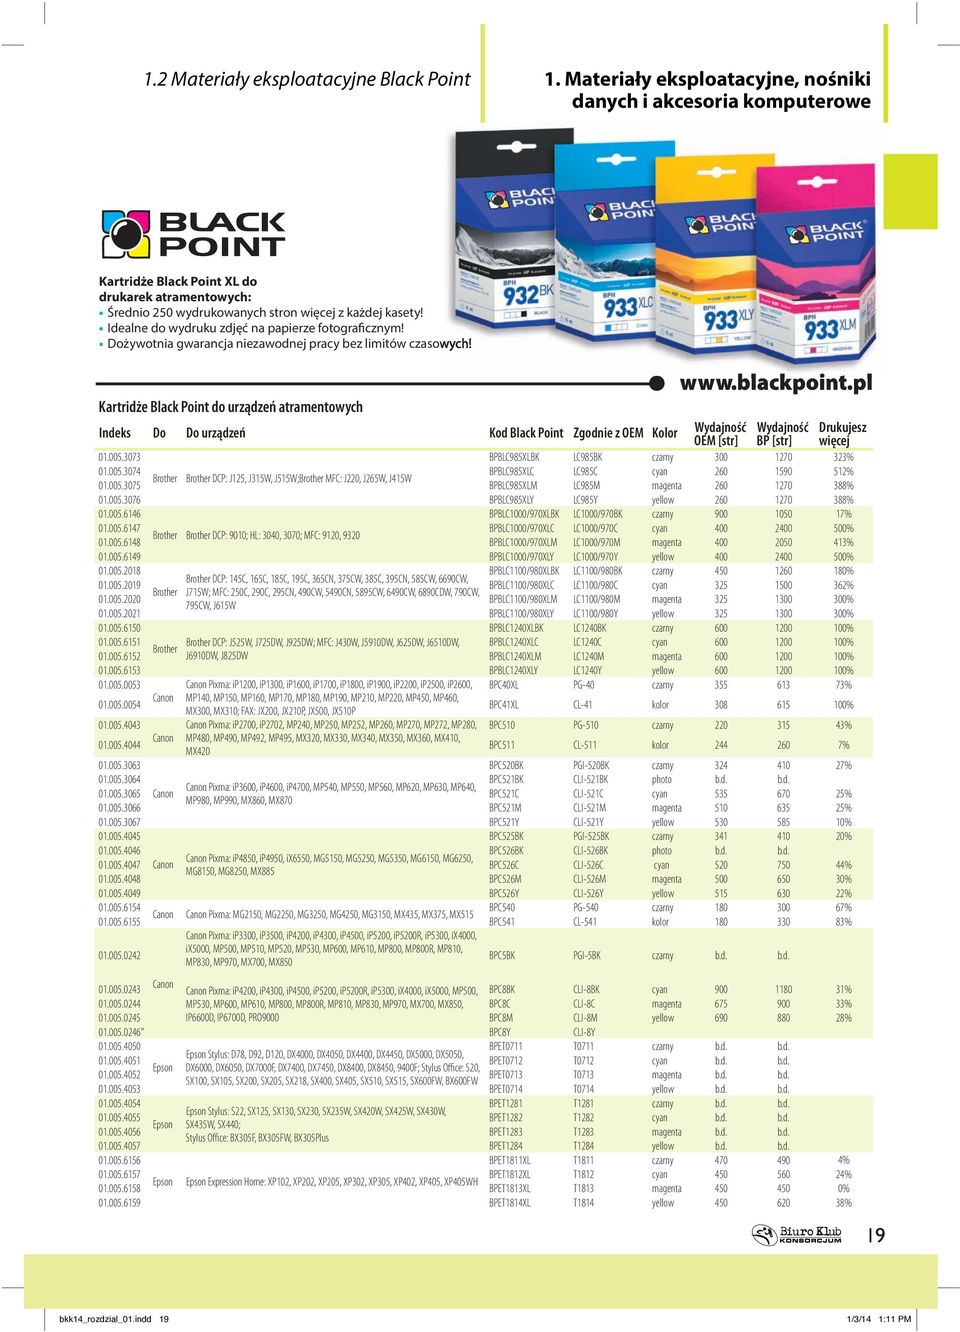 kartridże Black Point do urządzeń atramentowych Indeks Do Do urządzeń kod Black Point Zgodnie z OEM kolor Wydajność OEM [str] Wydajność BP [str] Drukujesz więcej 01.005.